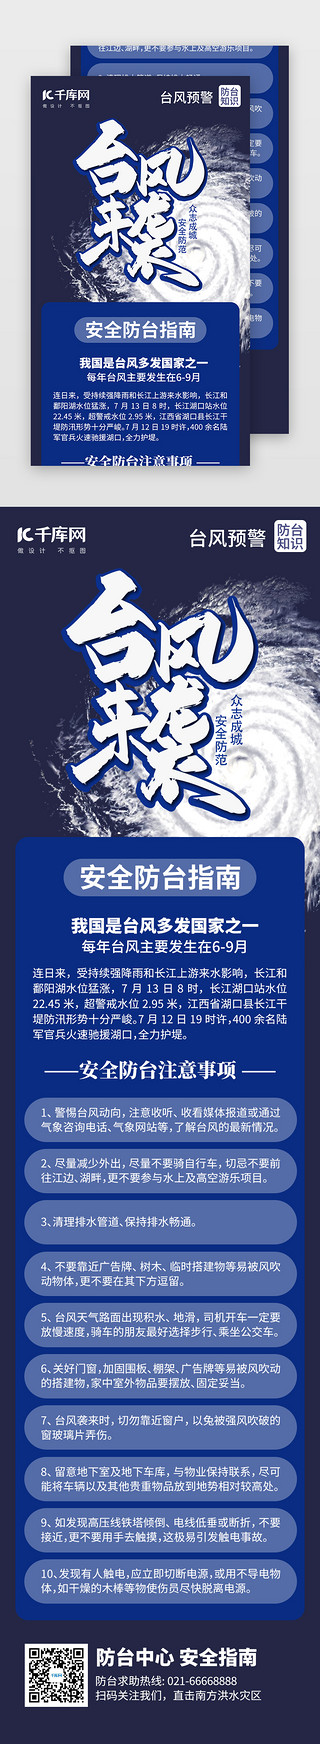 备战台风UI设计素材_台风预警安全指南H5